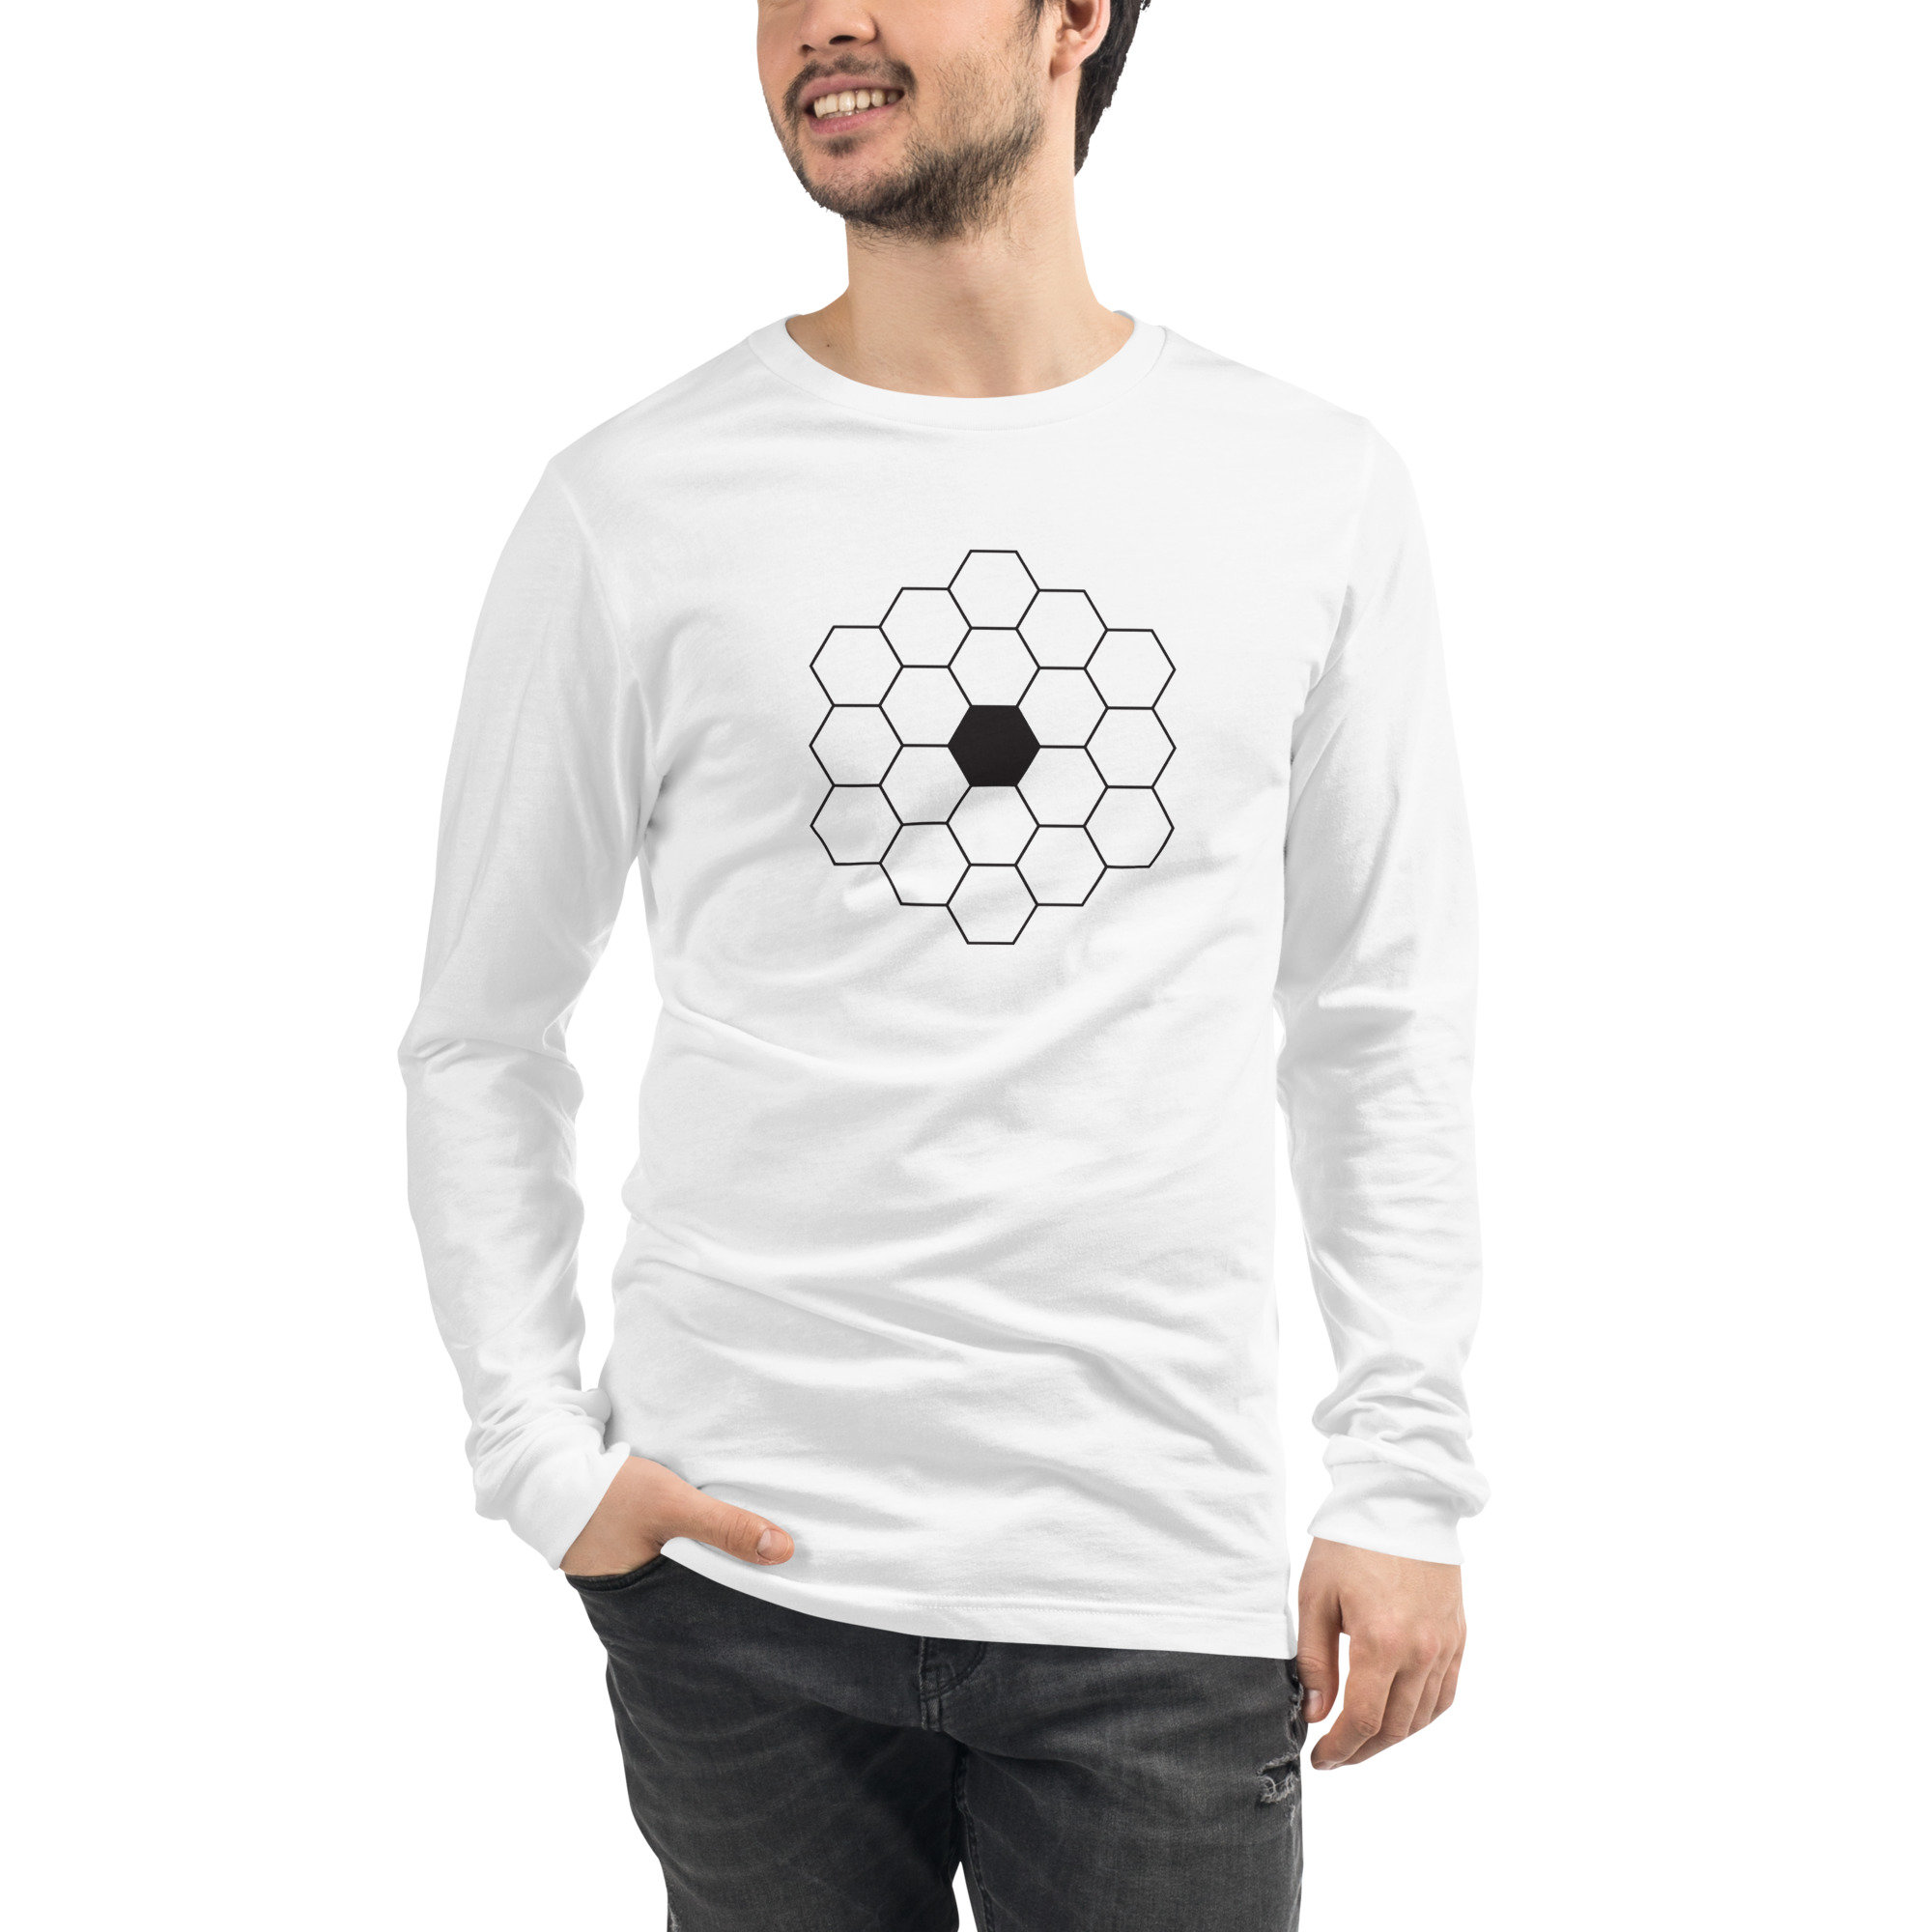 James Webb Space Telescope Long Sleeve Tee - JWT Unisex Shirt - James Webb Telescope Shirt